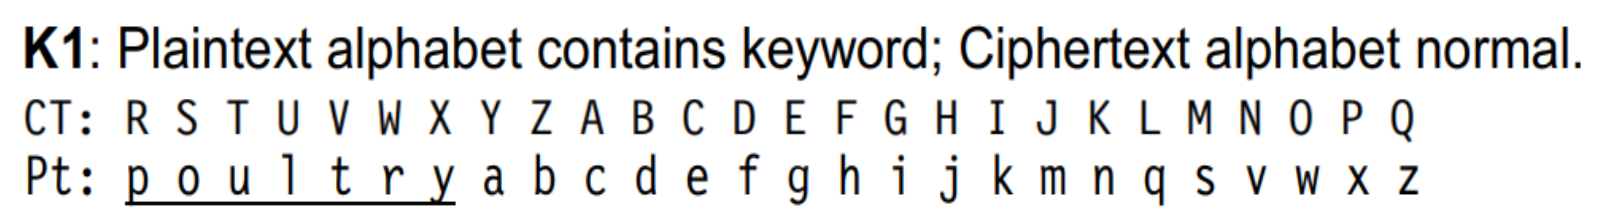 K1 example alphabet 1